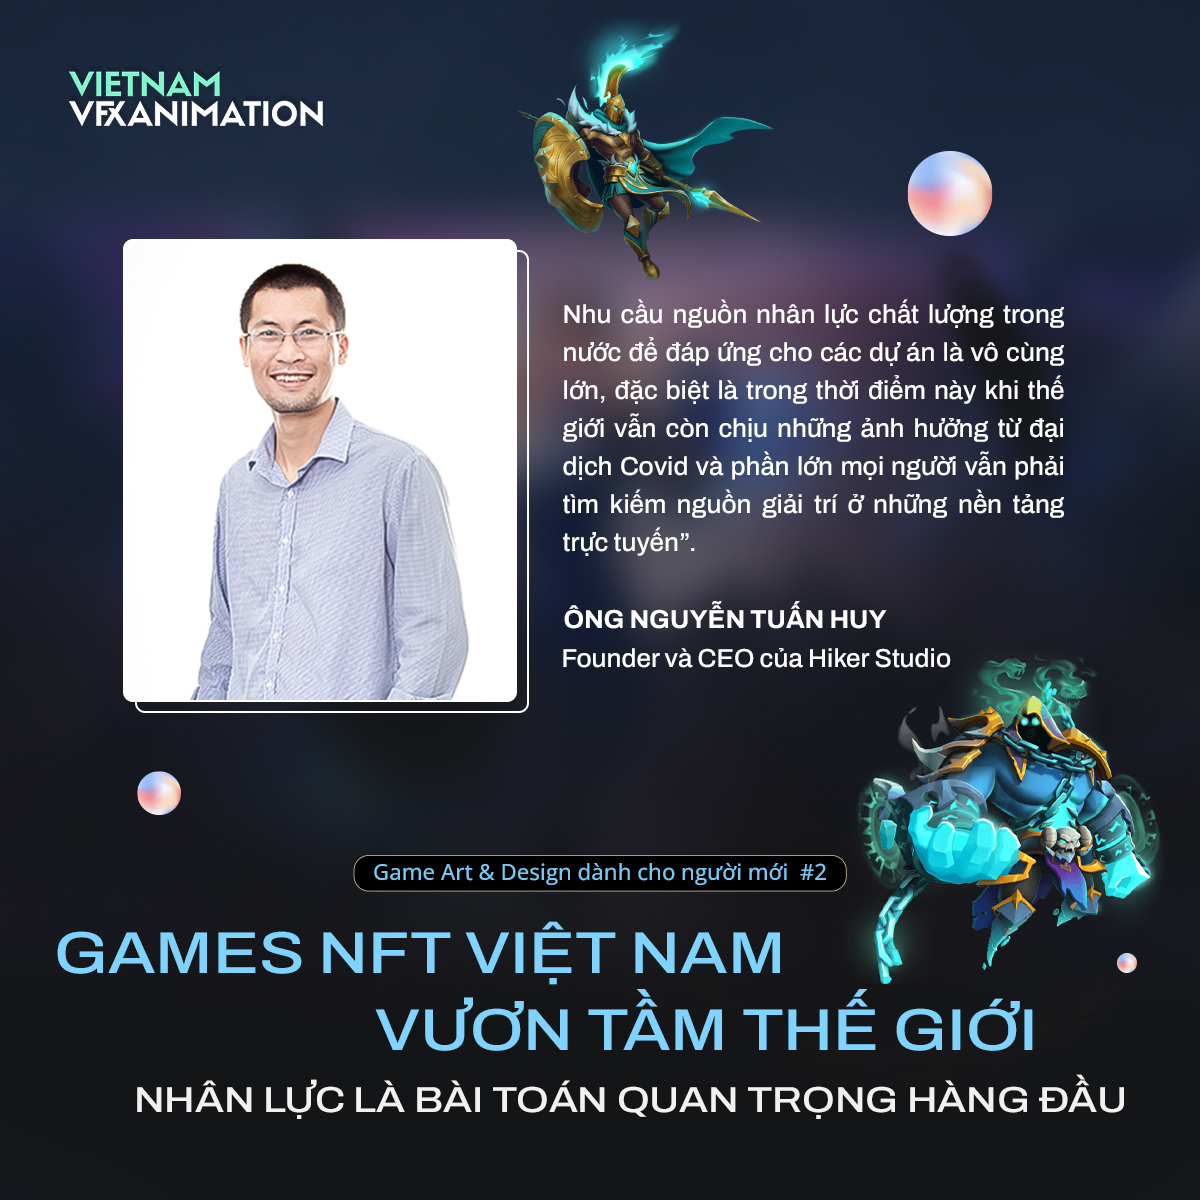 8-games-nft-viet-nam-vuon-tam-the-gioi-nhan-luc-la-bai-toan-quan-trong-hang-dau